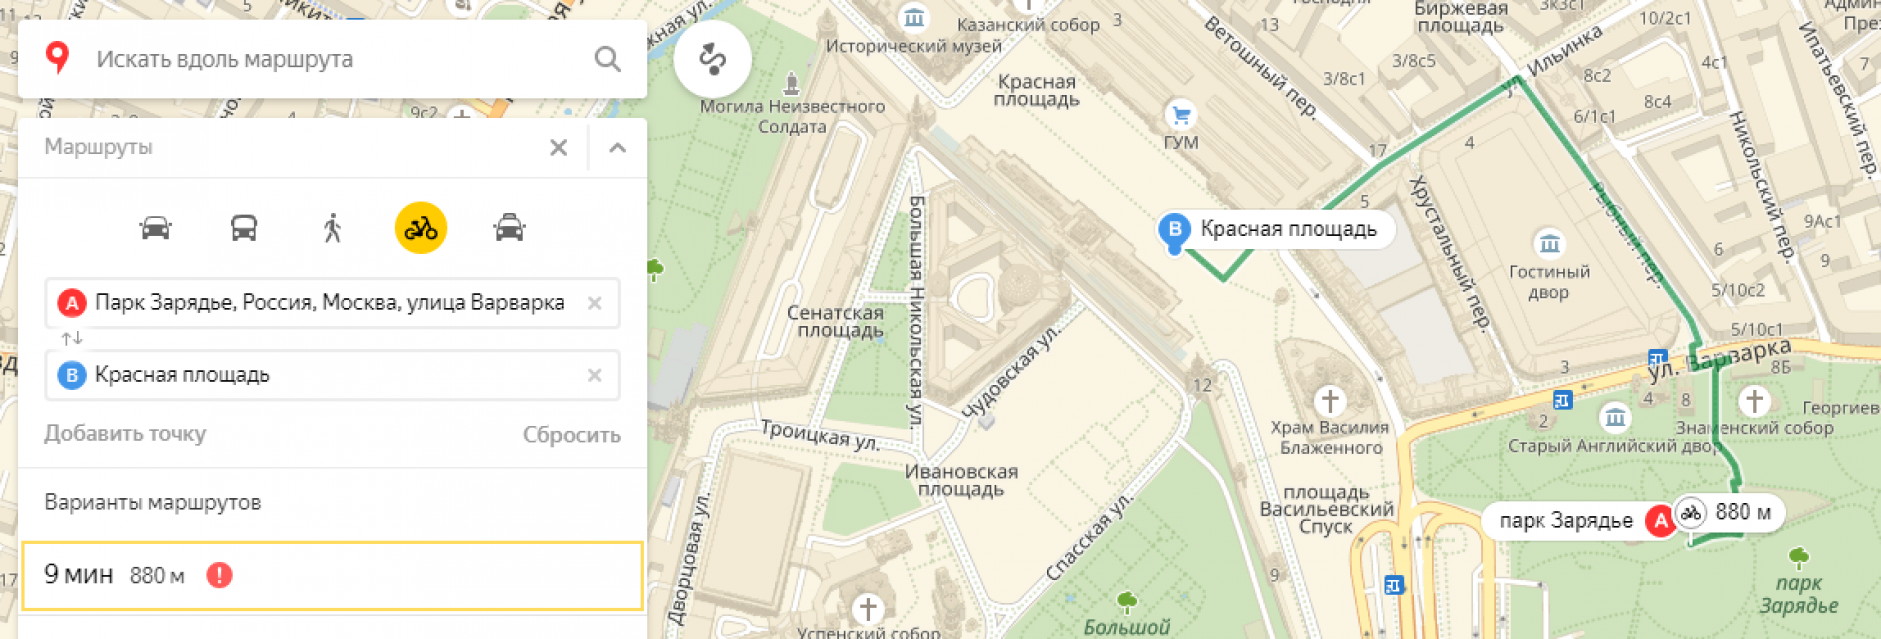 Веломаршрут в Яндекс.Картах